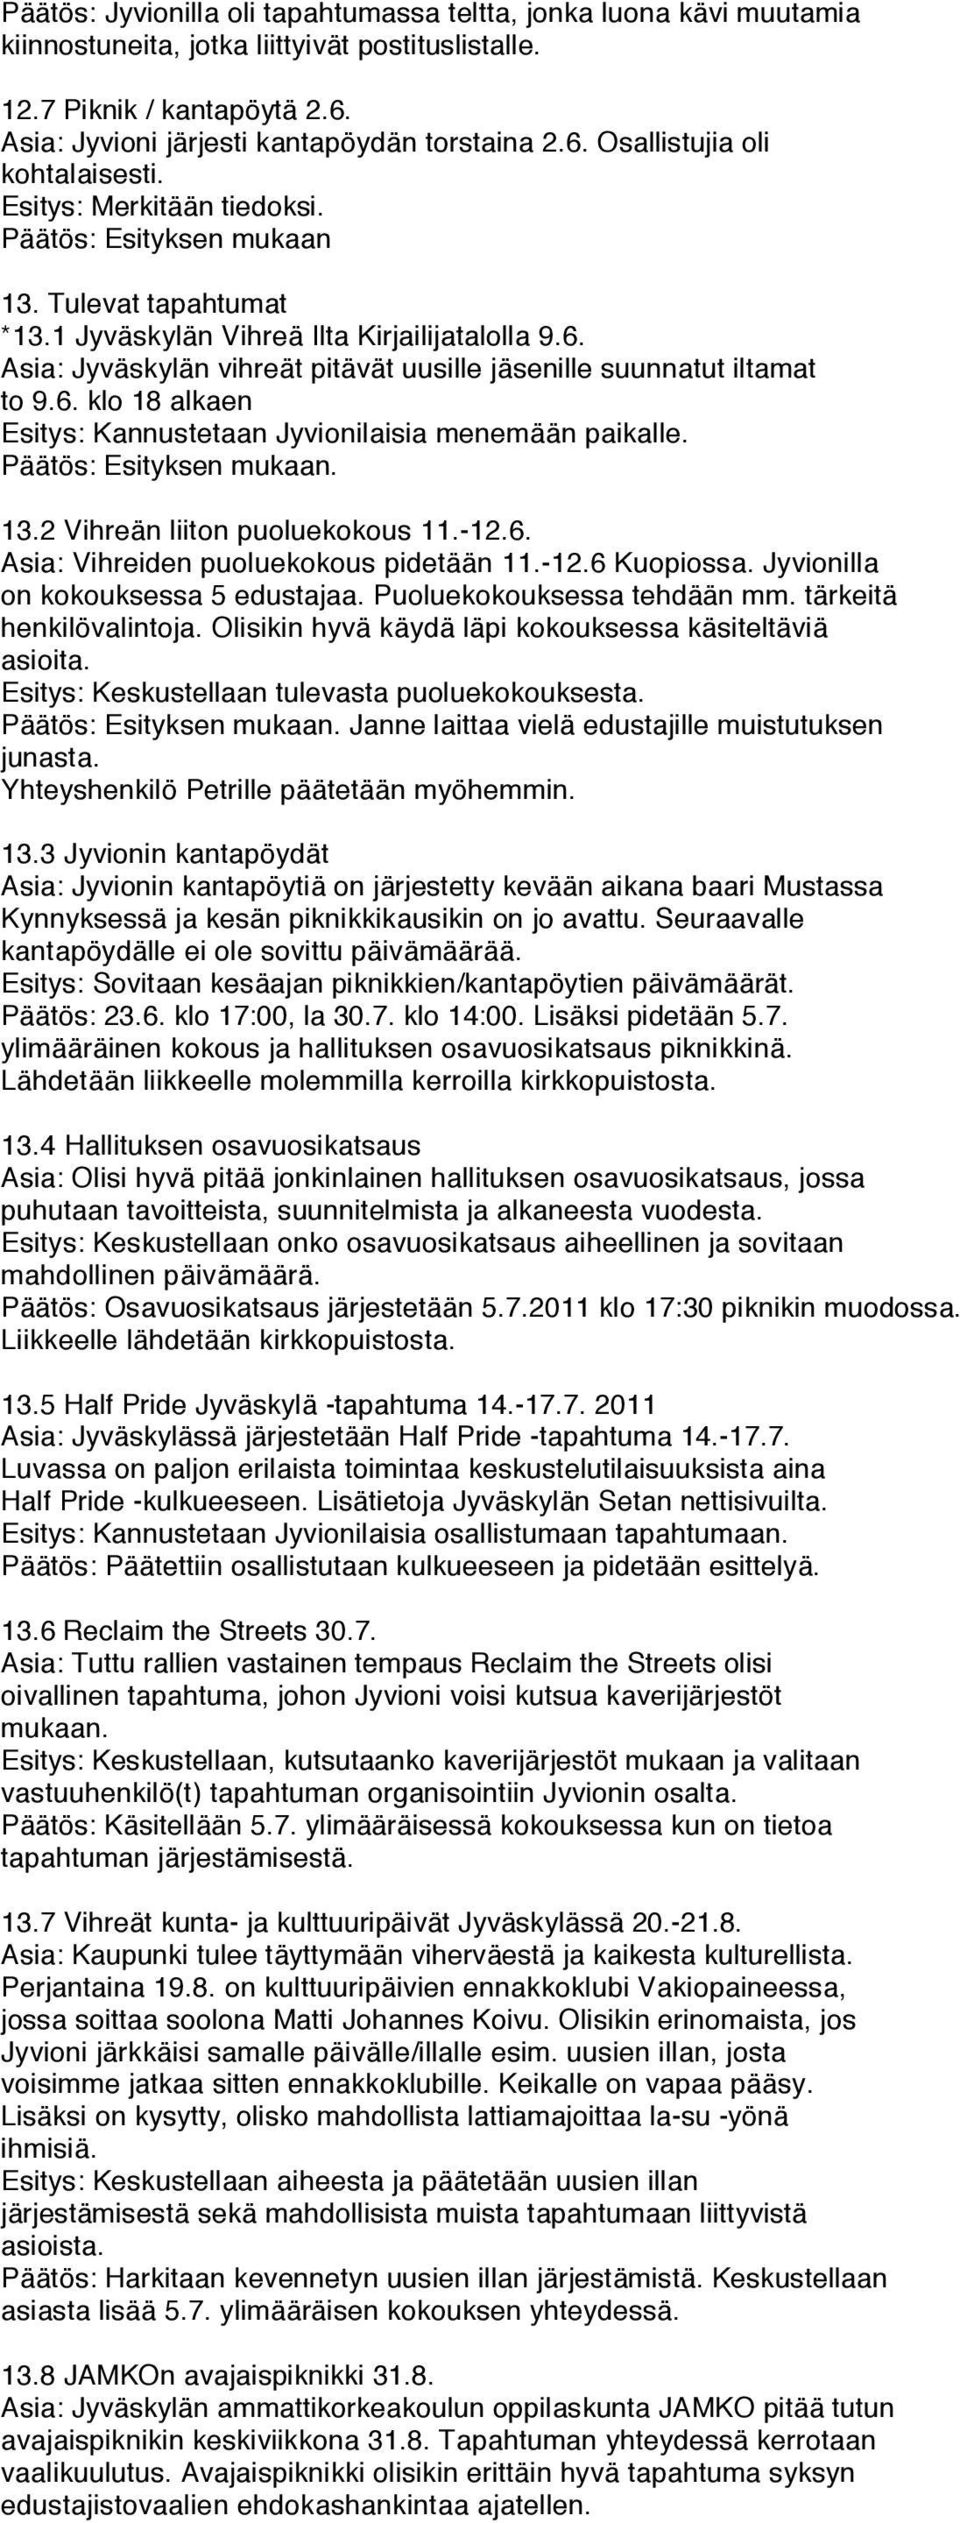 13.2 Vihreän liiton puoluekokous 11.-12.6. Asia: Vihreiden puoluekokous pidetään 11.-12.6 Kuopiossa. Jyvionilla on kokouksessa 5 edustajaa. Puoluekokouksessa tehdään mm. tärkeitä henkilövalintoja.